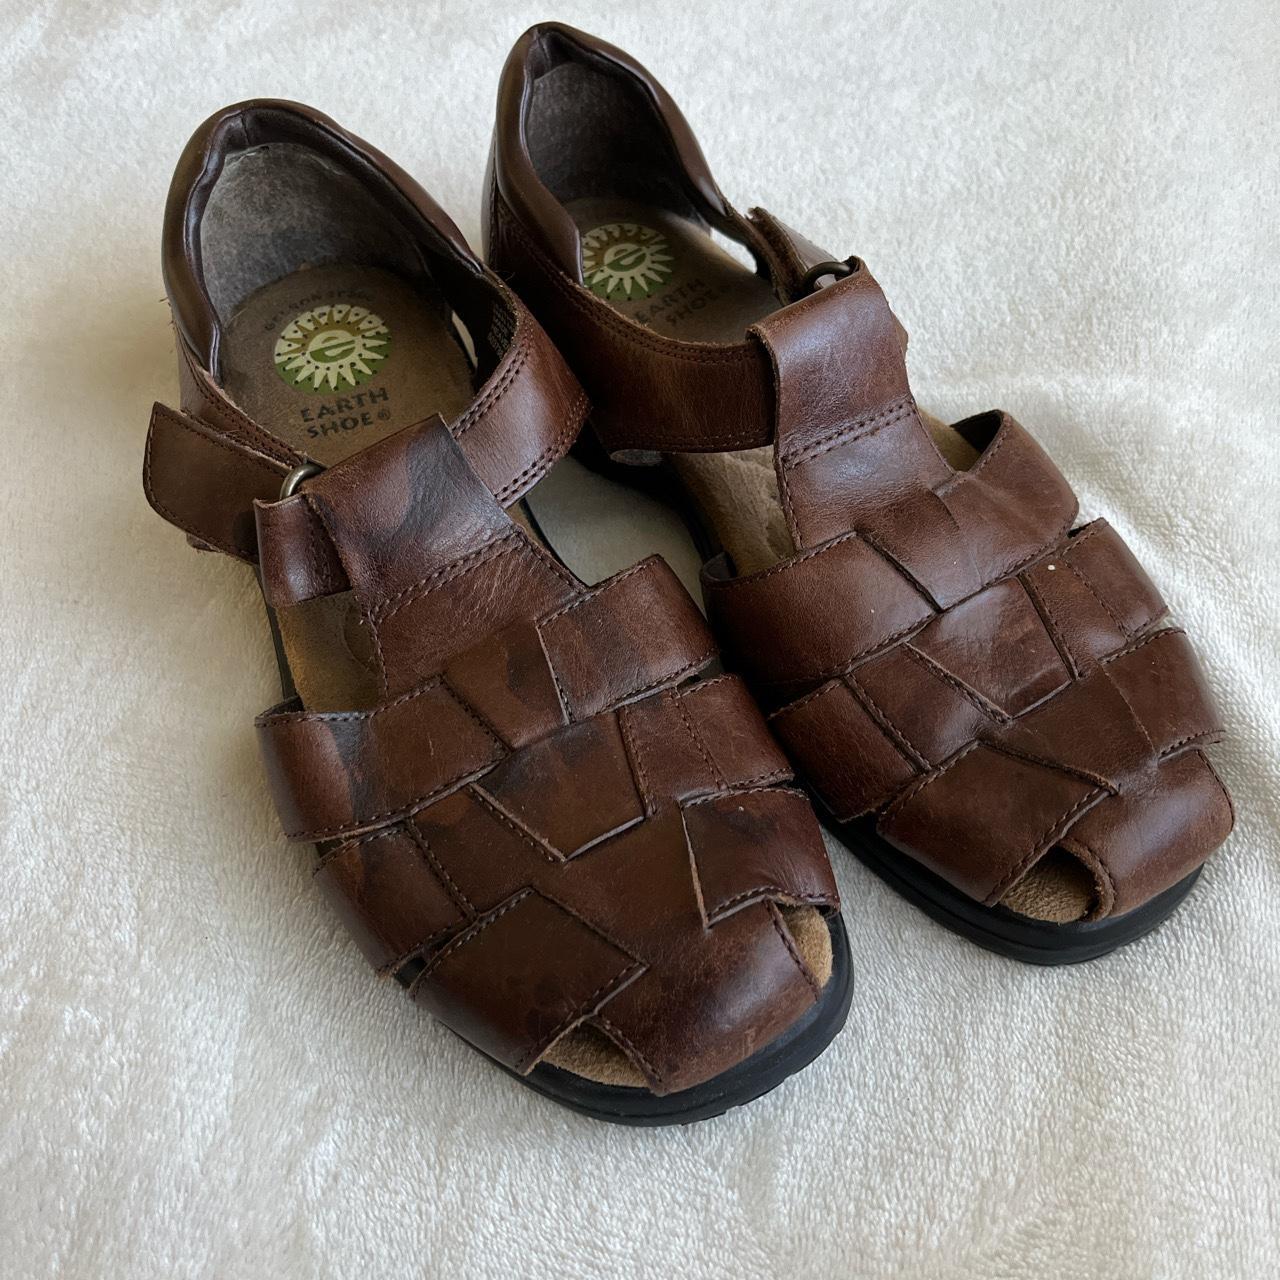 vintage crunchy leather fisherman sandals size... - Depop